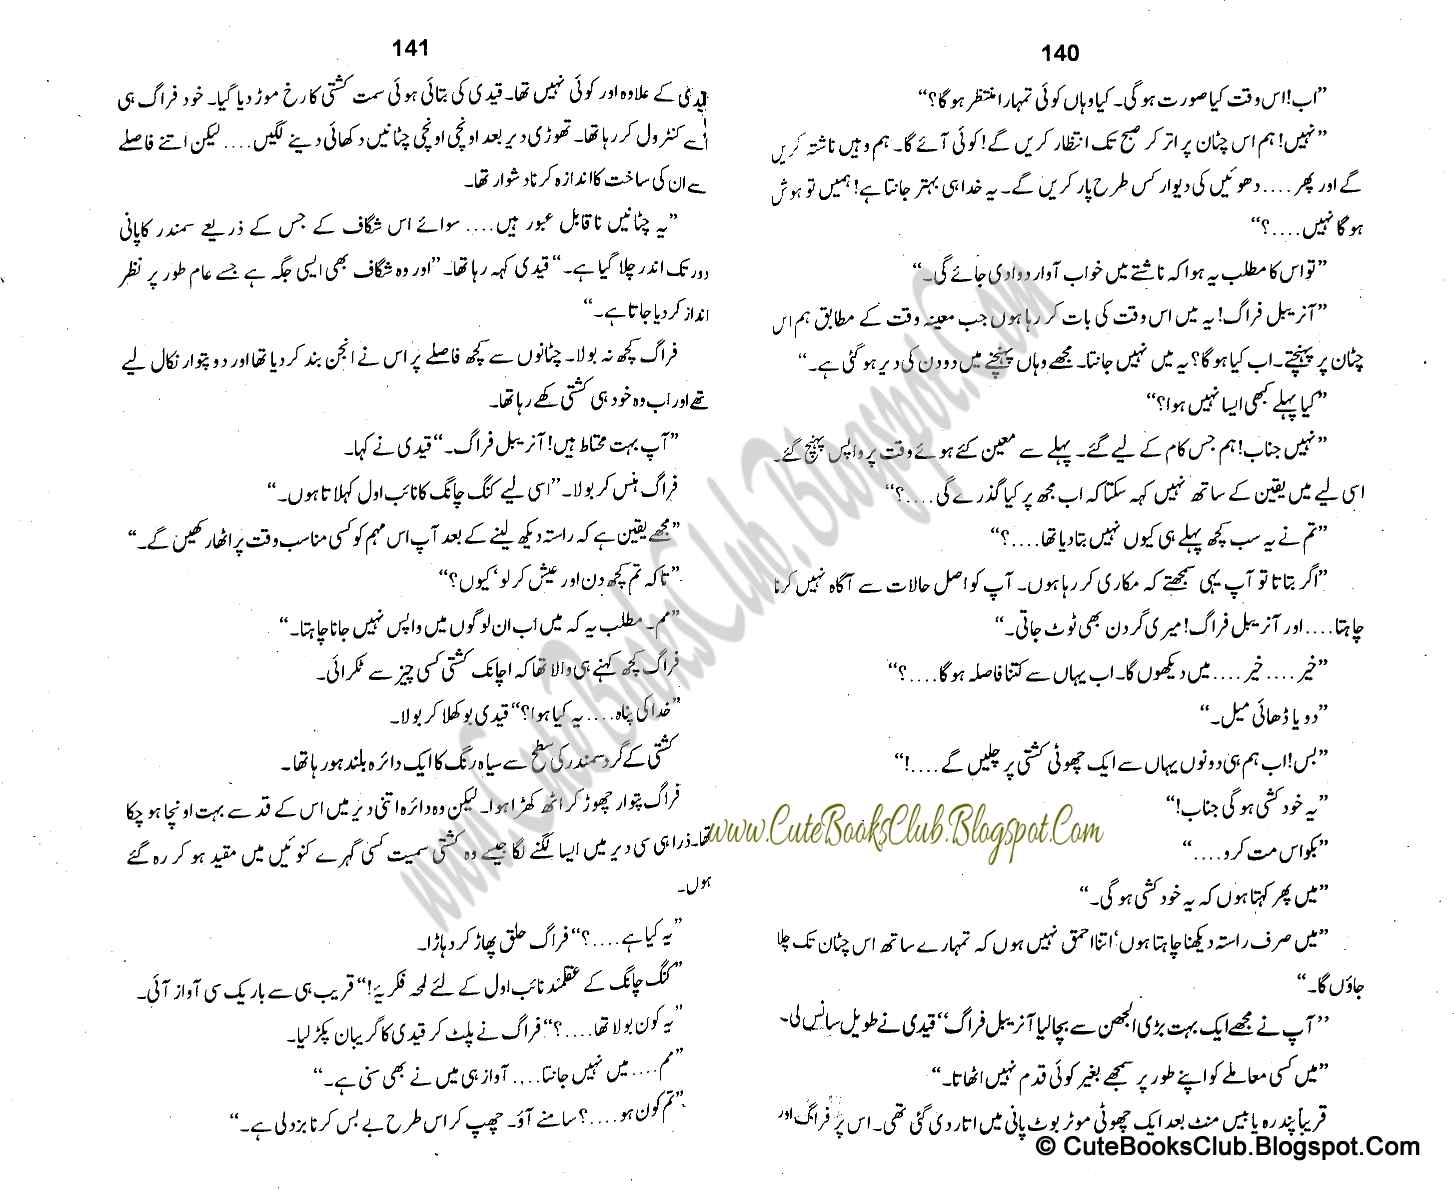 069-Dhuwain Ka Hisar, Imran Series By Ibne Safi (Urdu Novel)